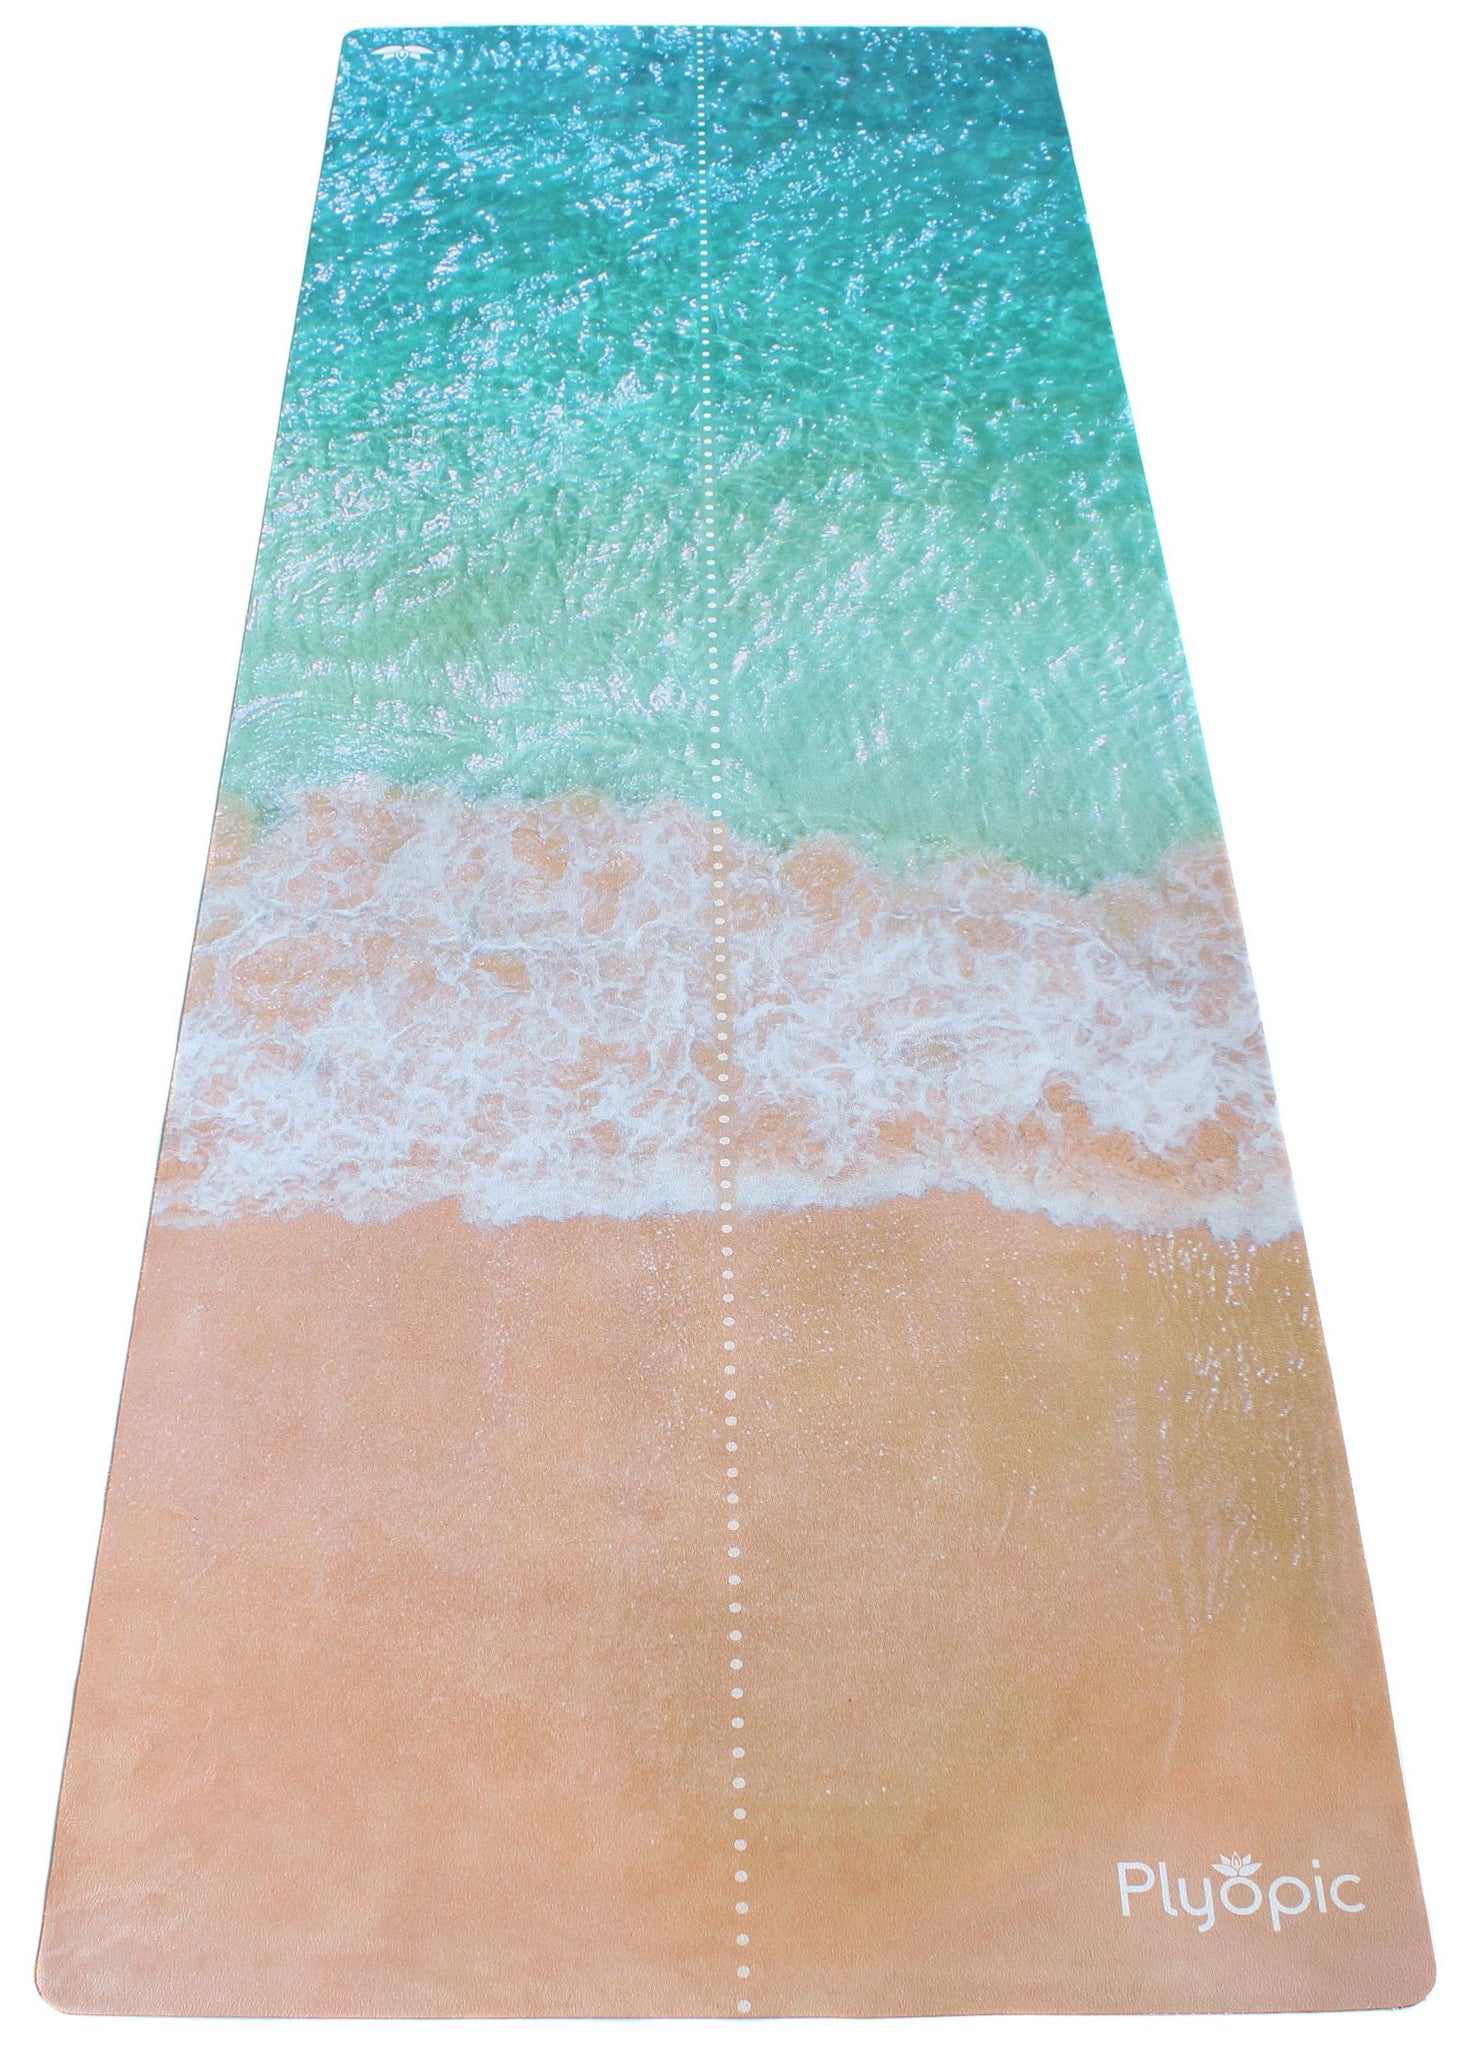 Plyopic-Travel Yoga Mat / Towel Beach Face-Yoga Mat